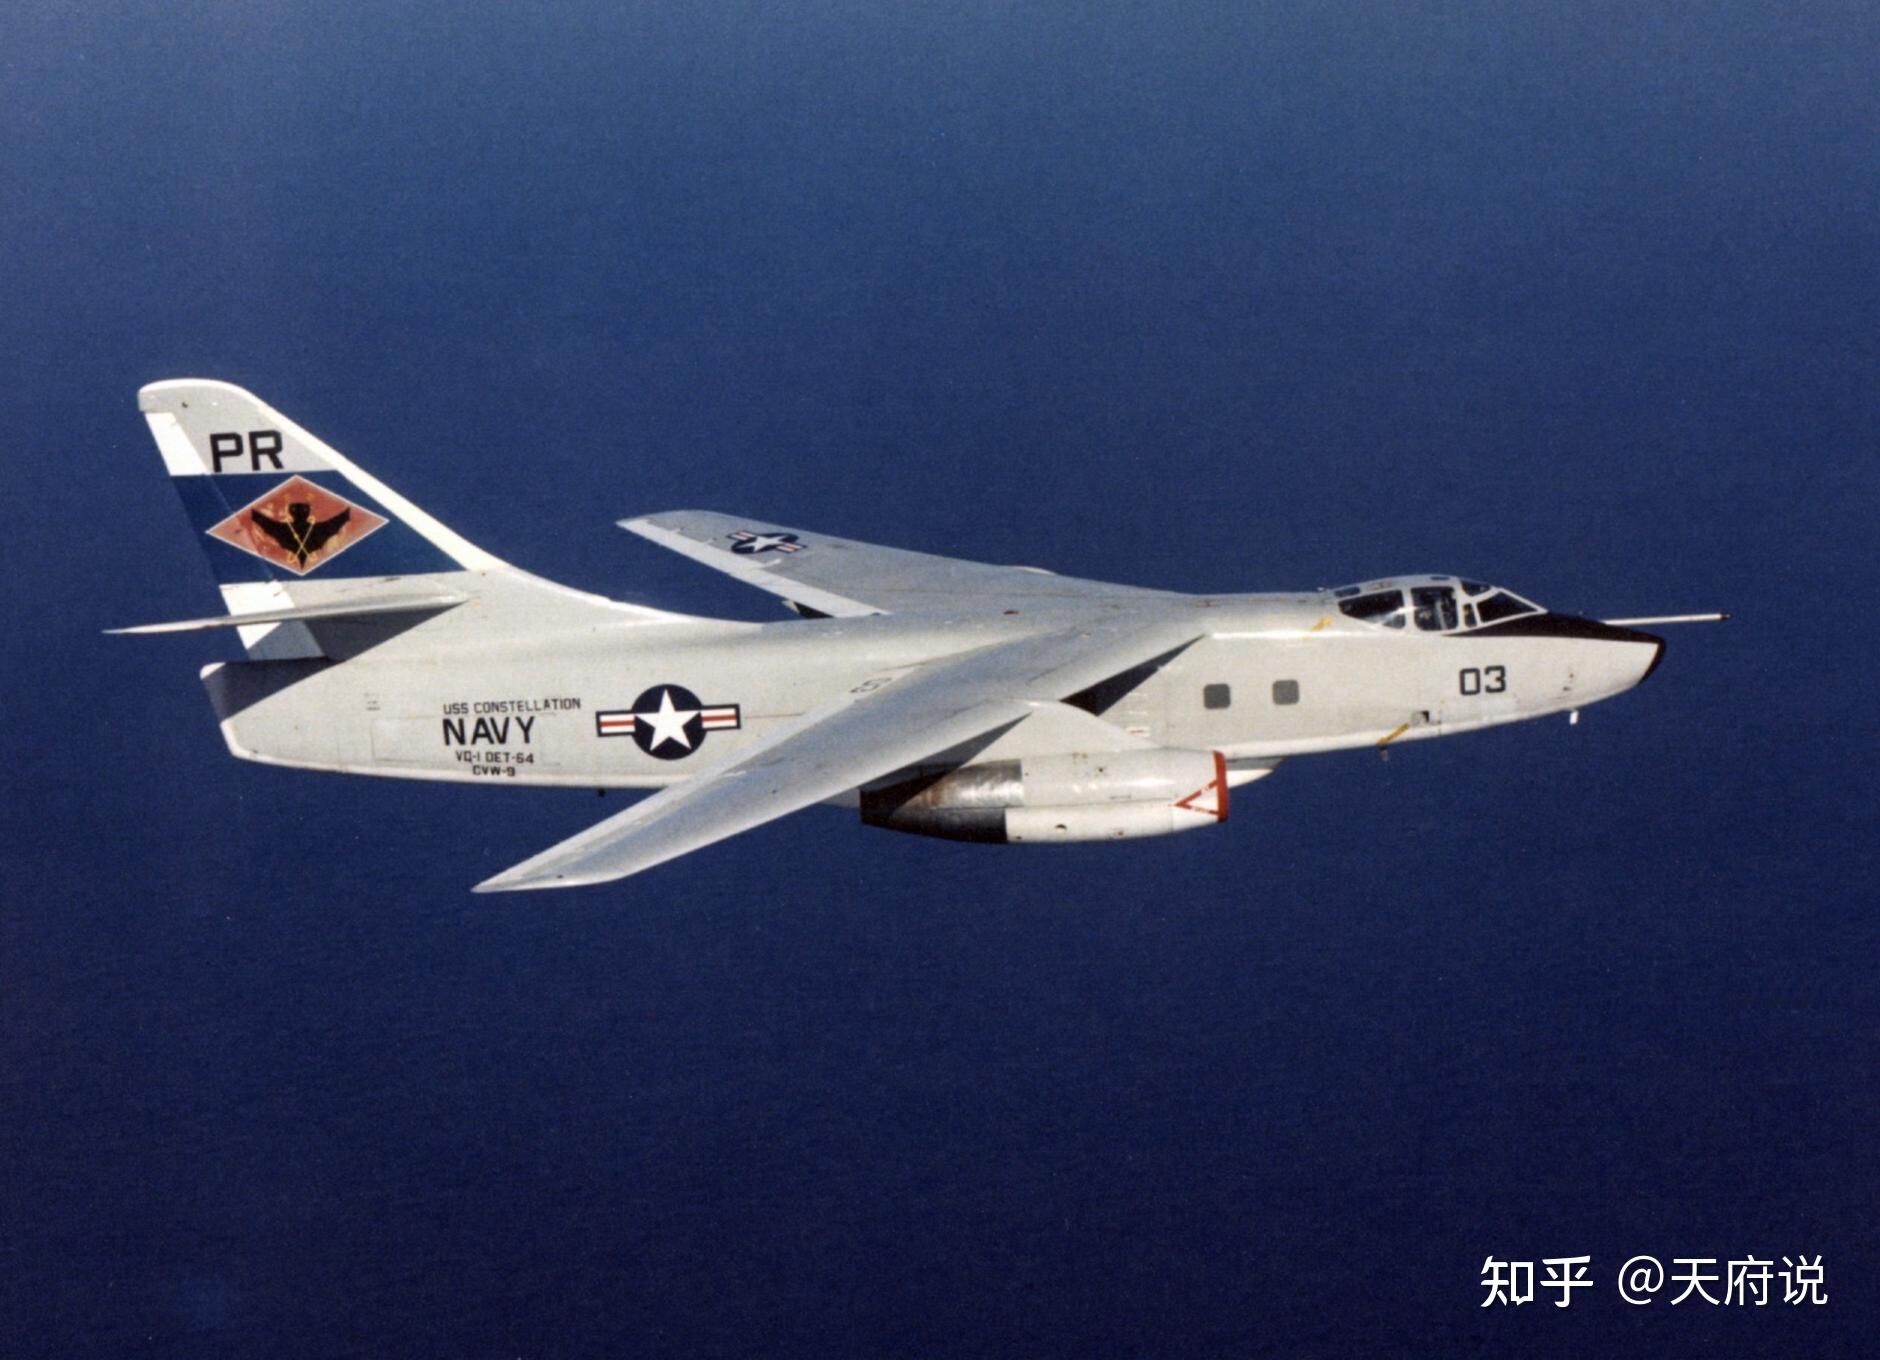 舰载机中占有重要地位,曾辉煌一时的a-3"空中武士"攻击机